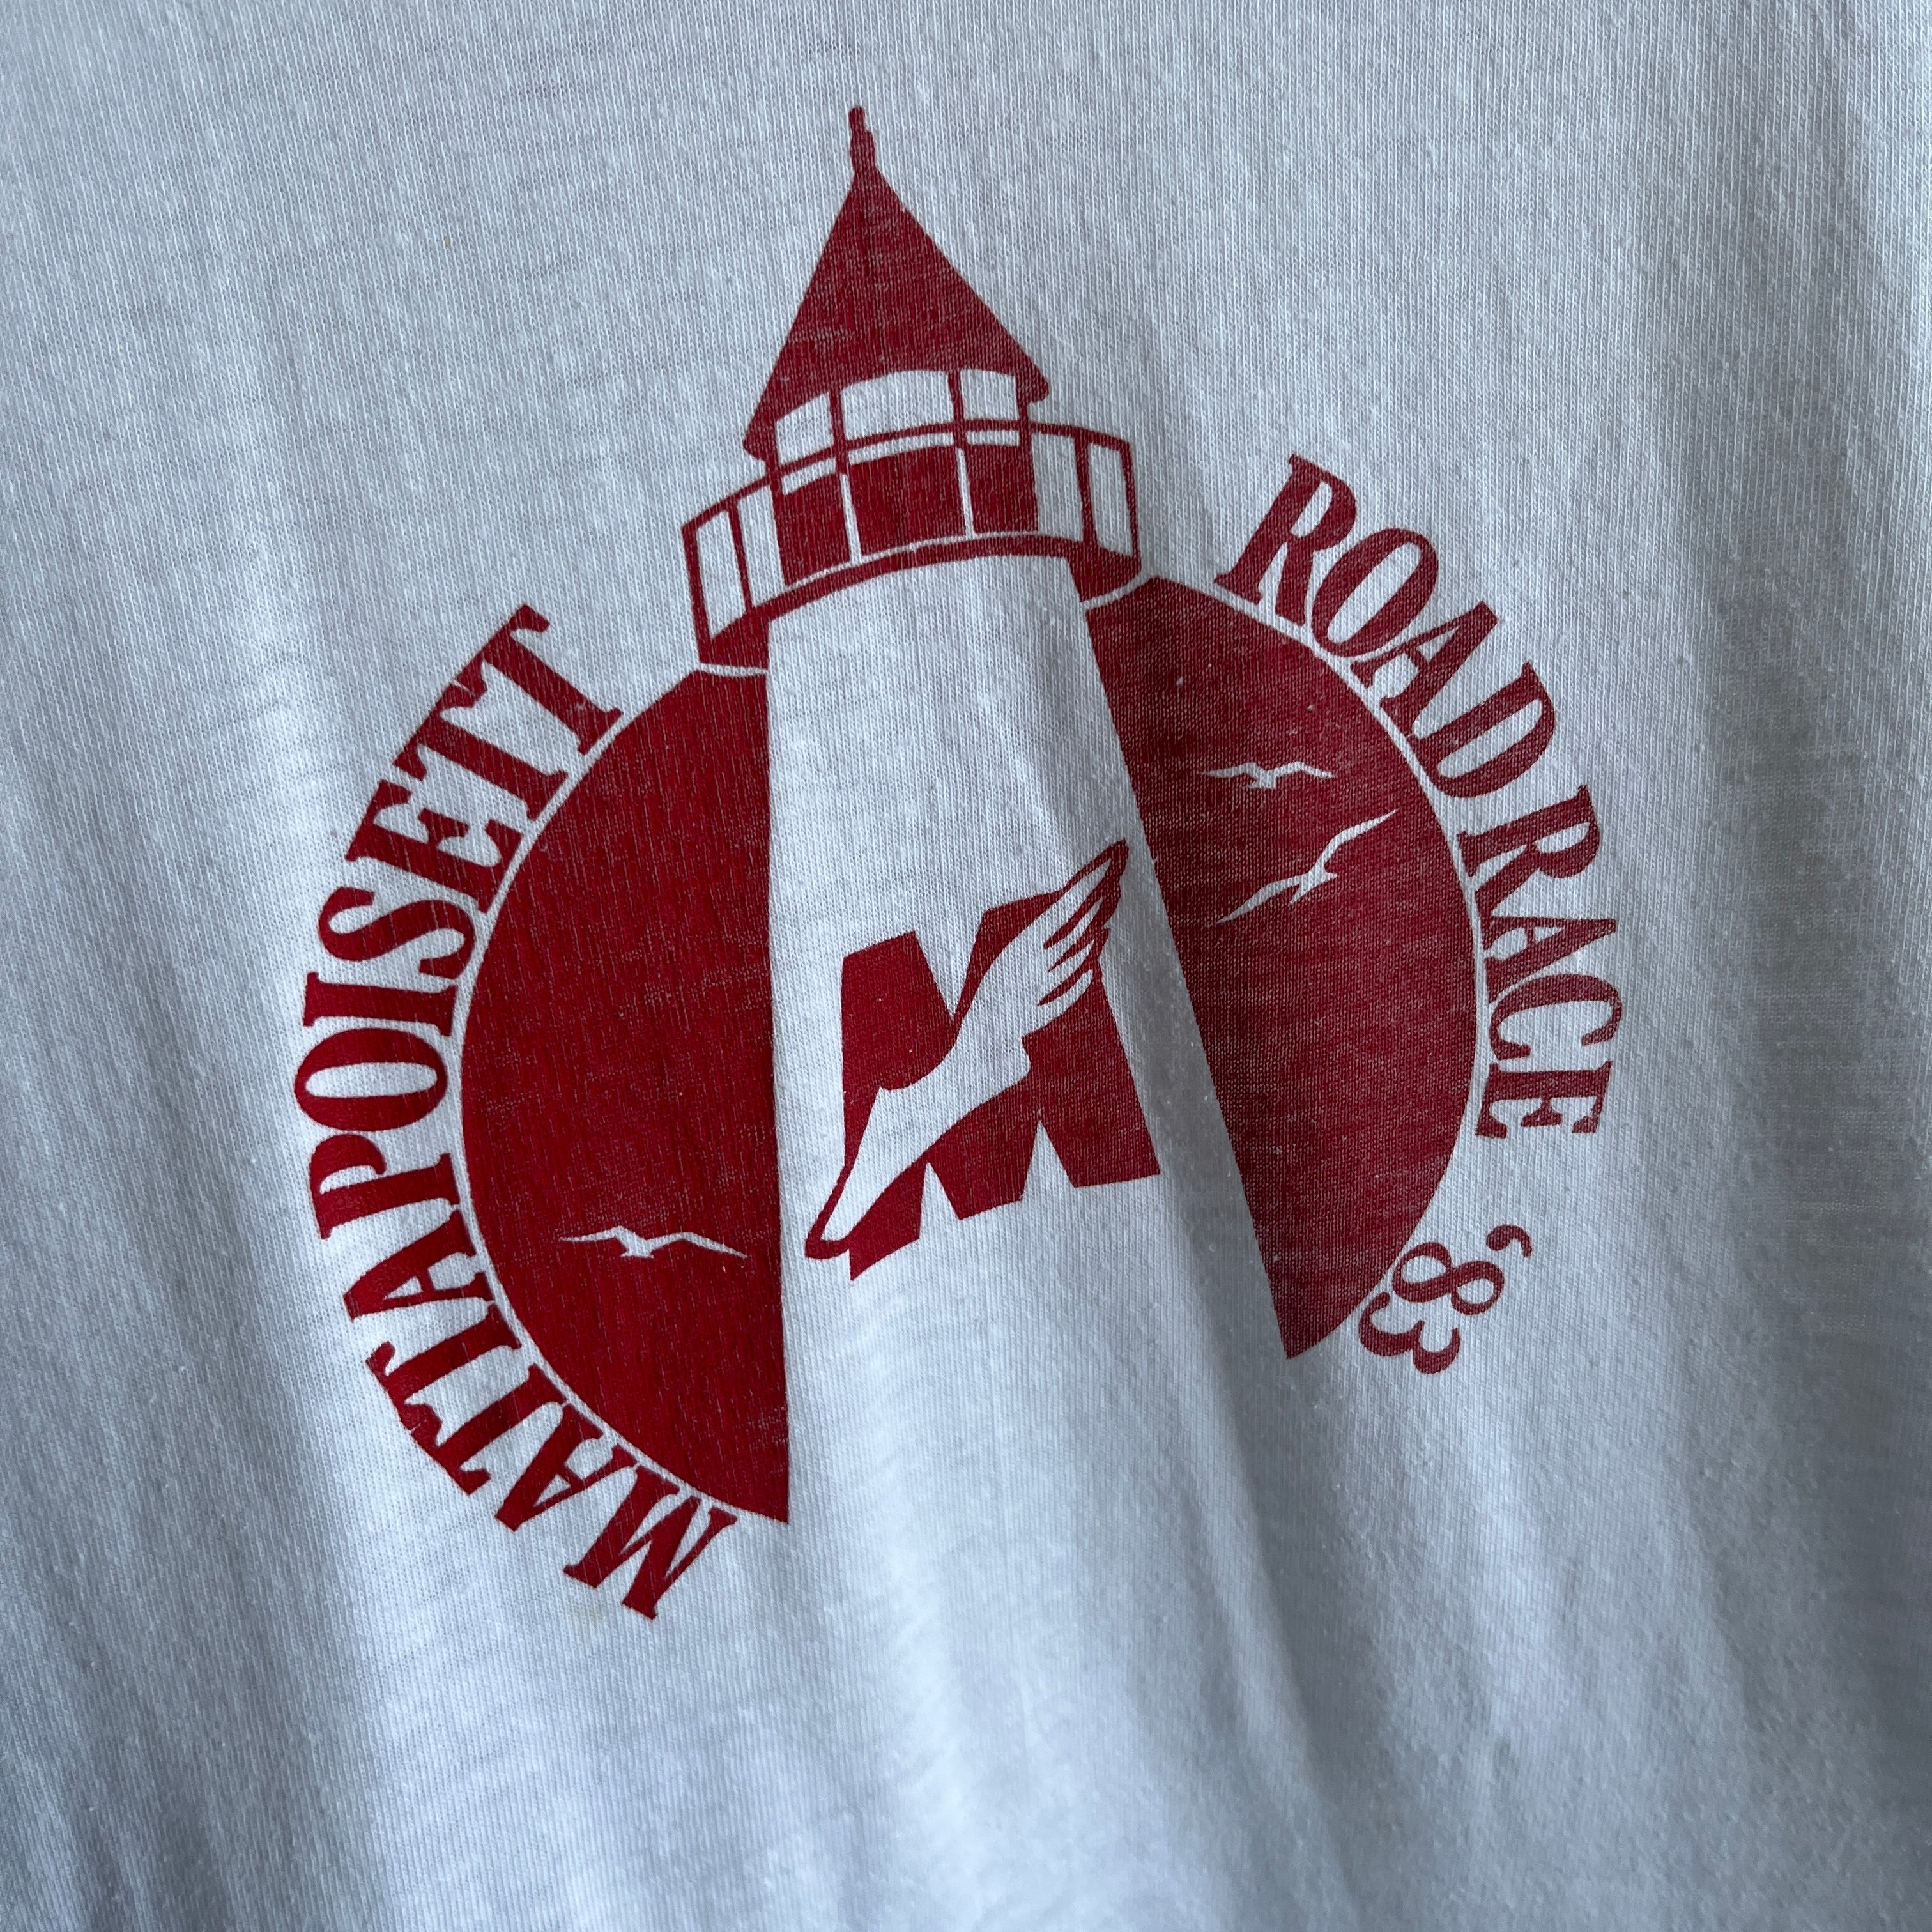 1983 Mattapoisett, MA Roadrace Ring T-Shirt